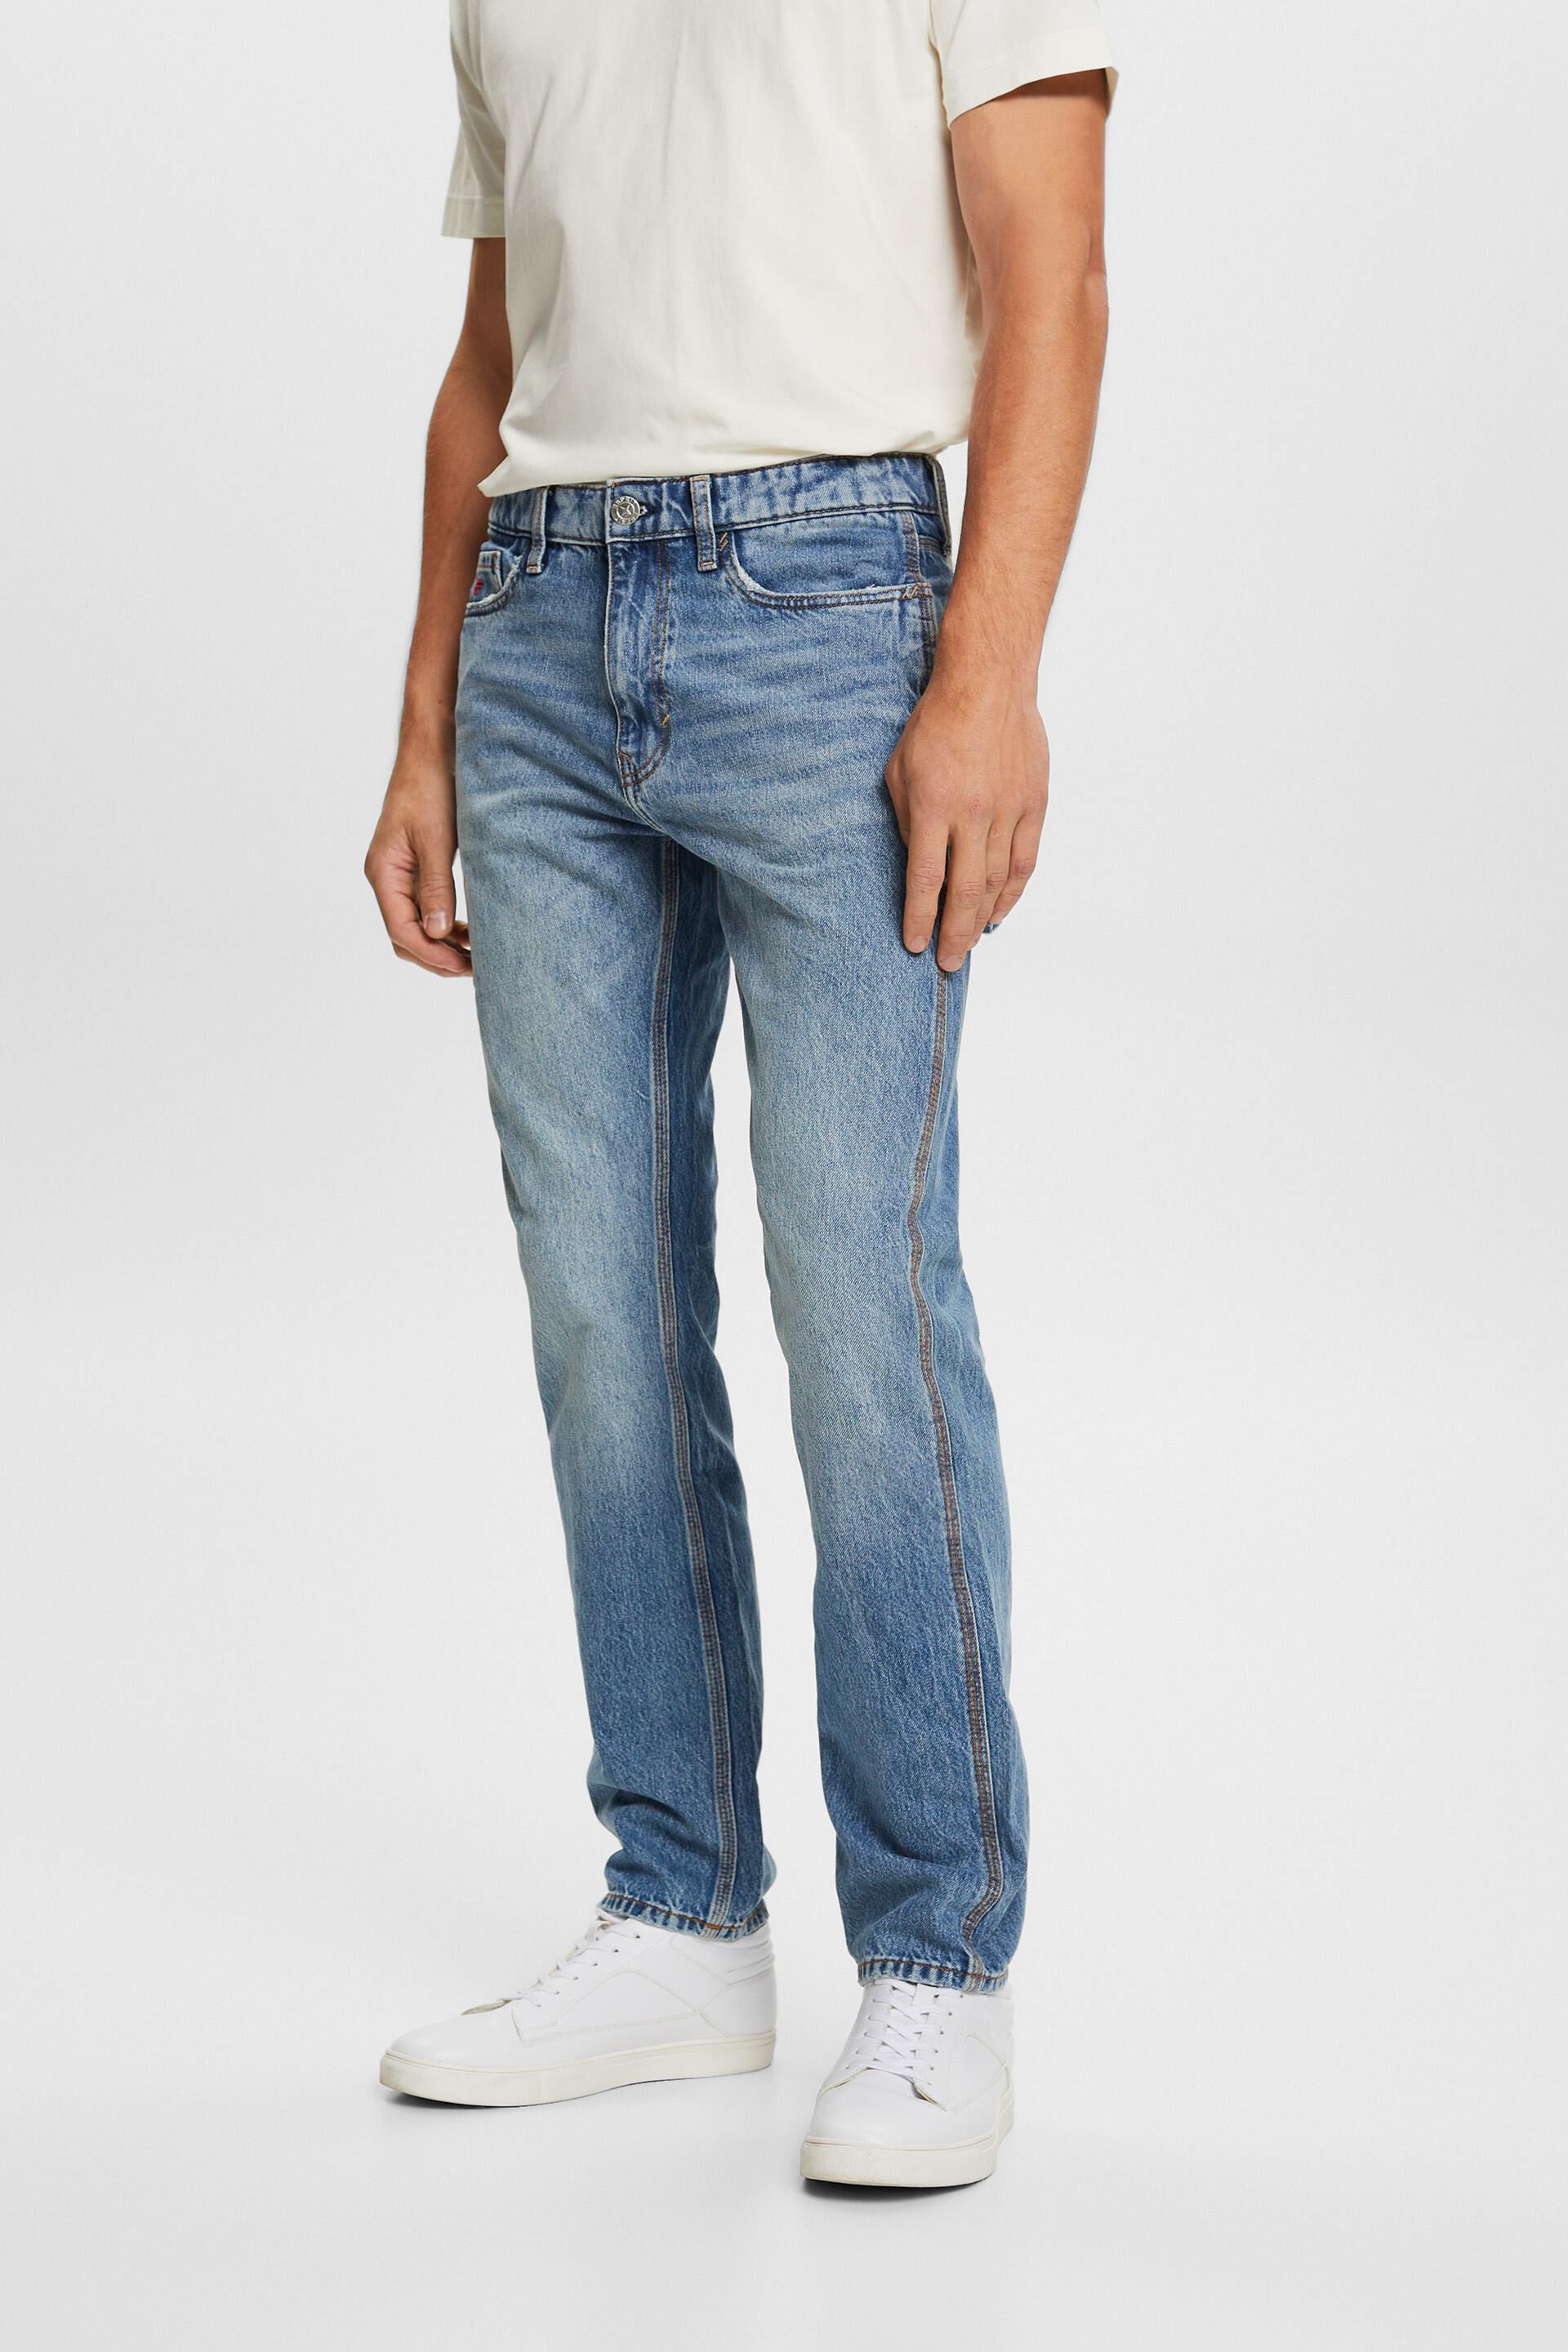 Esprit jeans, fit 100% Carpenter straight cotton